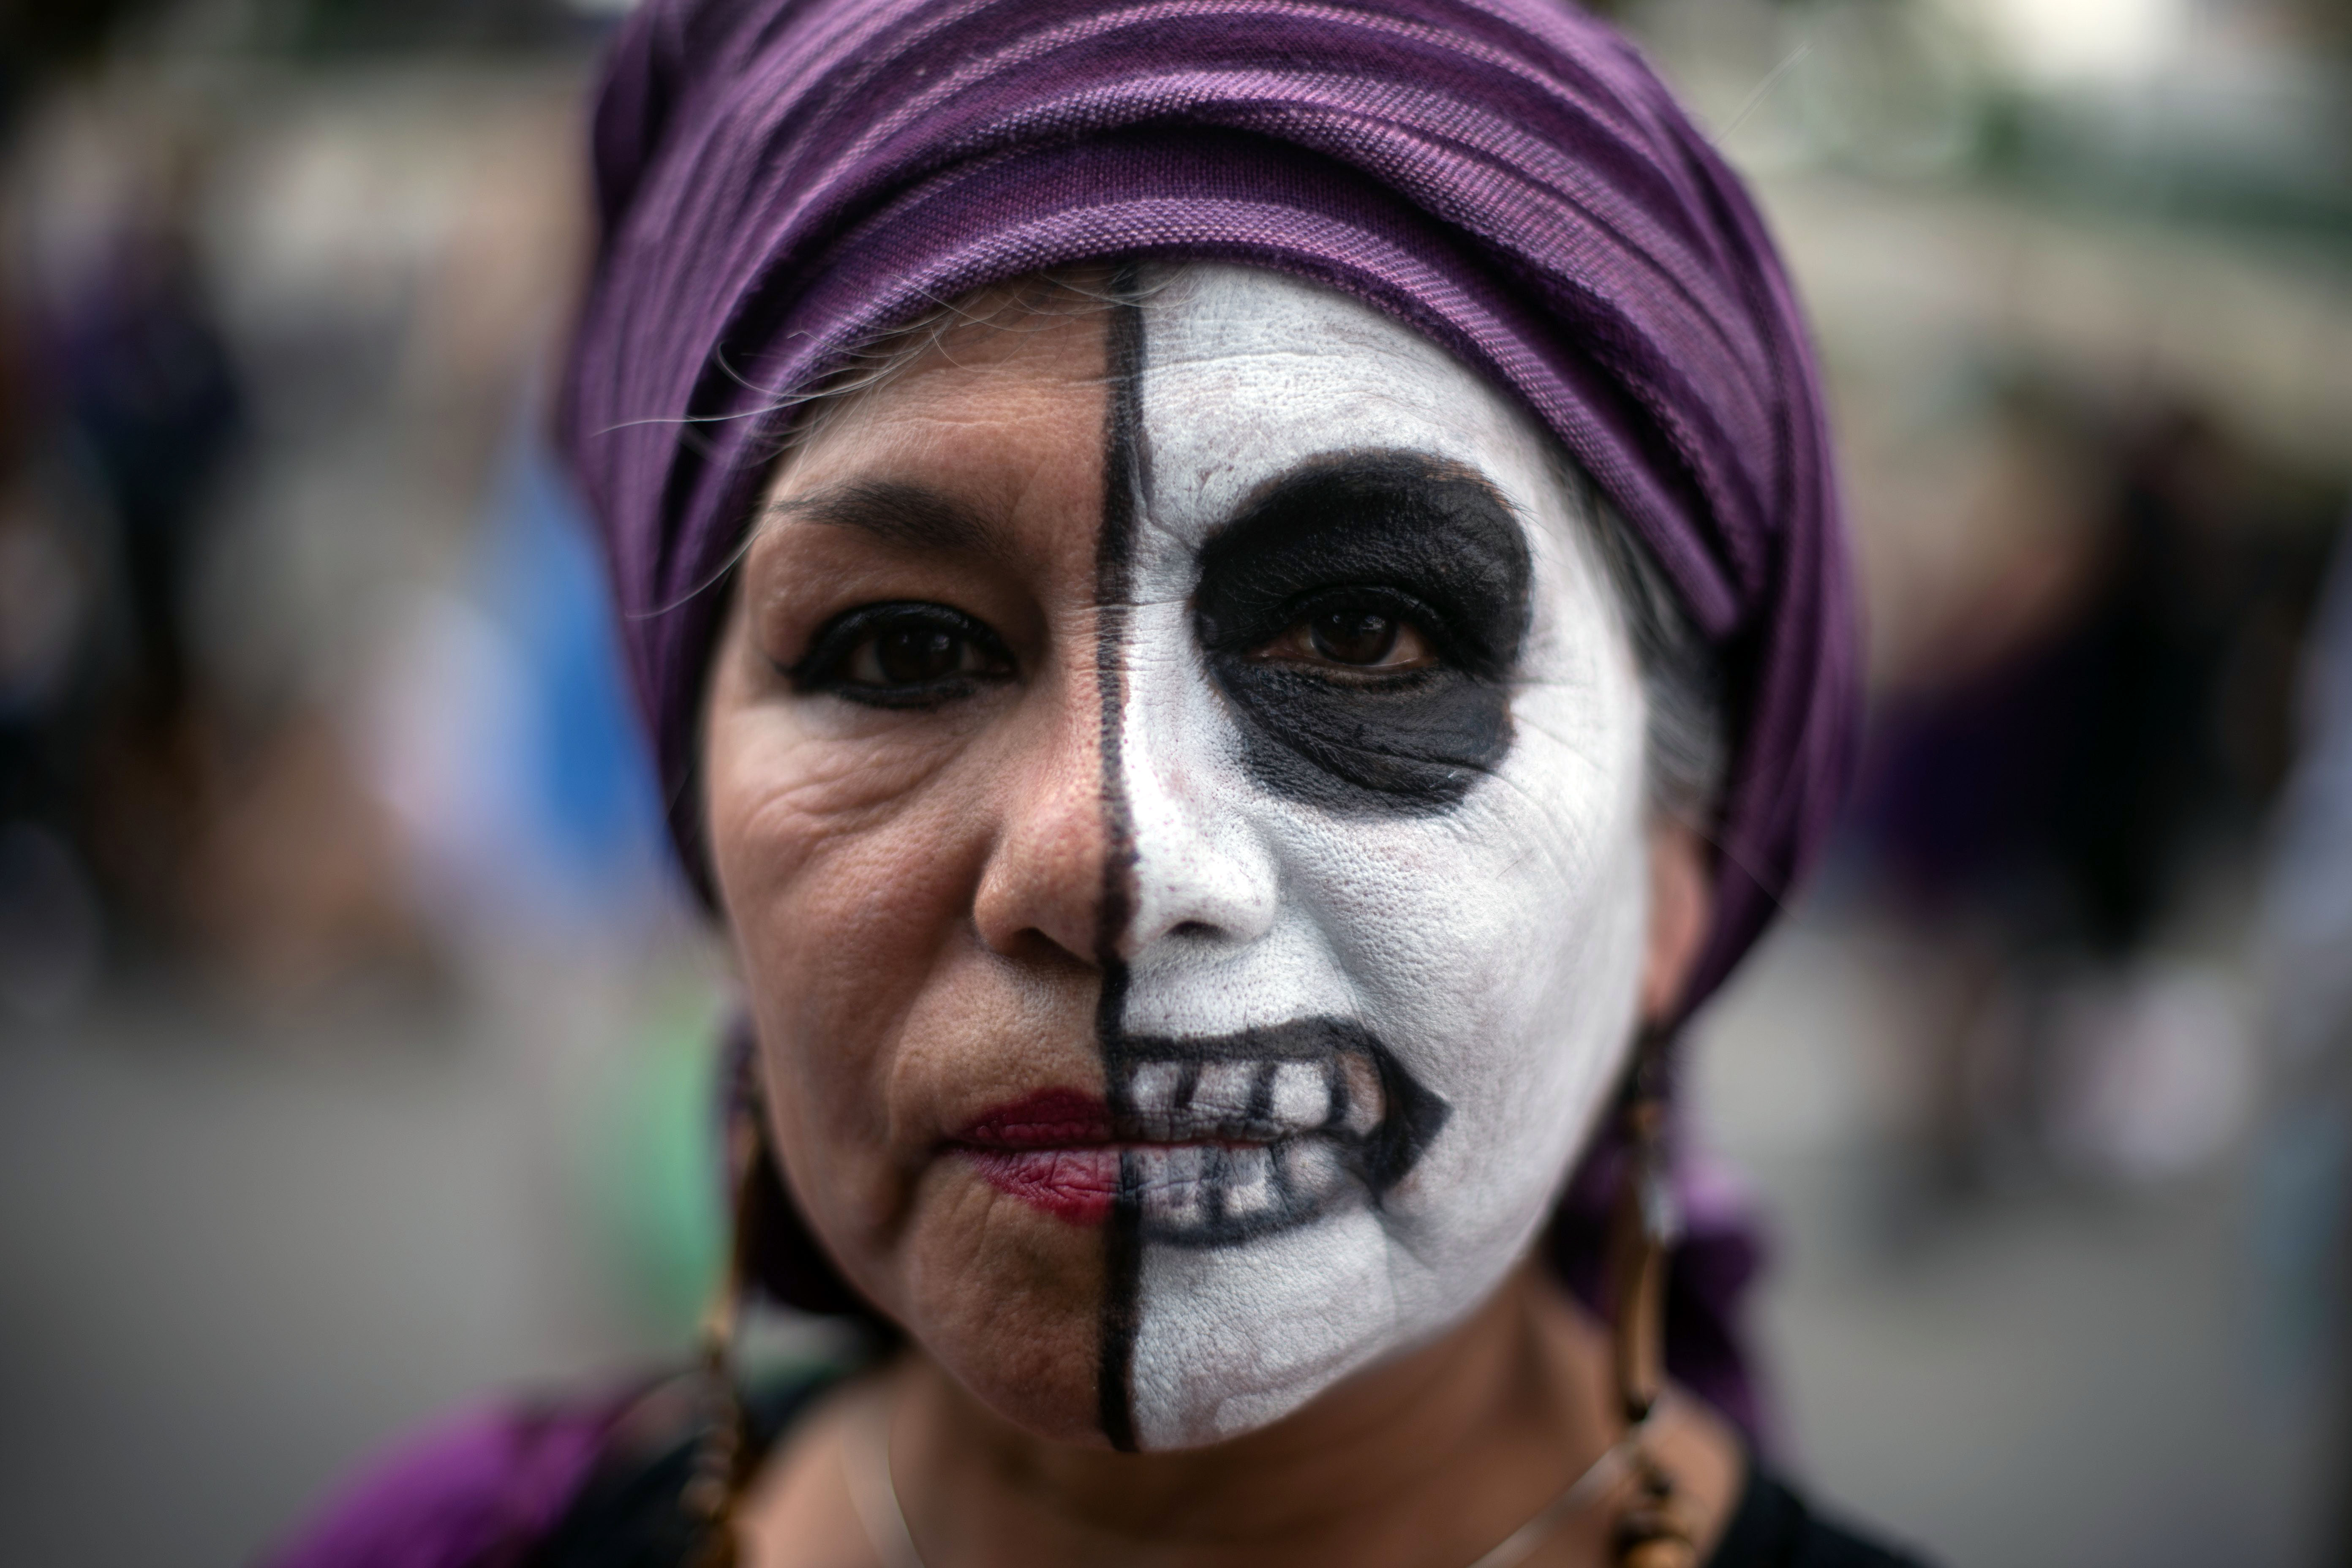 La marcha partió del Ángel de la Independencia con dirección al Zócalo capitalino para exigir el fin de la violencia de género y la precarización laboral, entre otras consignas (Foto: AFP/Pedro Pardo)